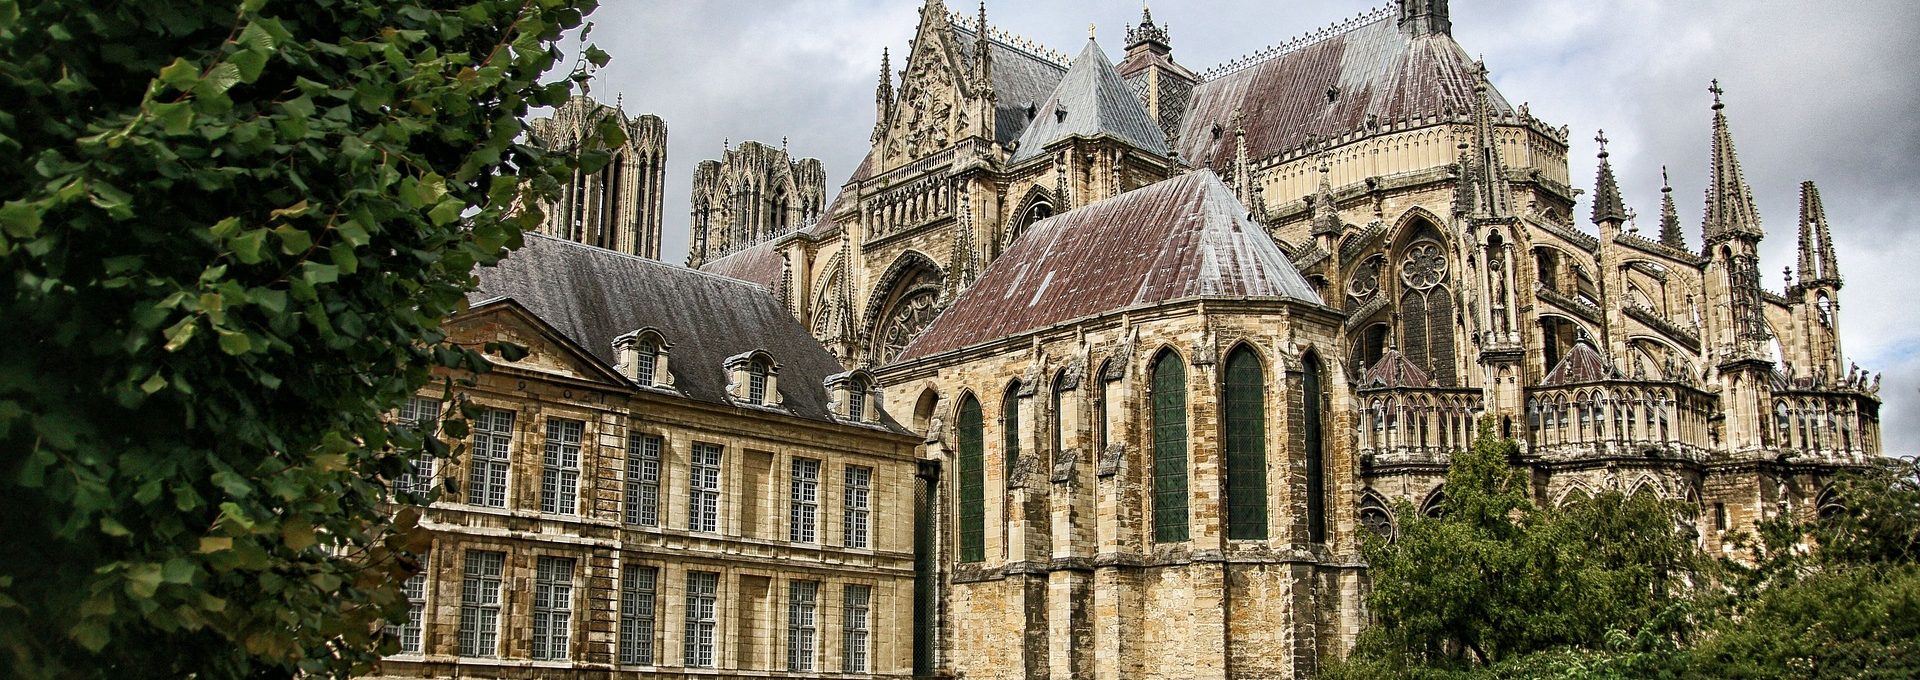 Vista da Catedral de Reims